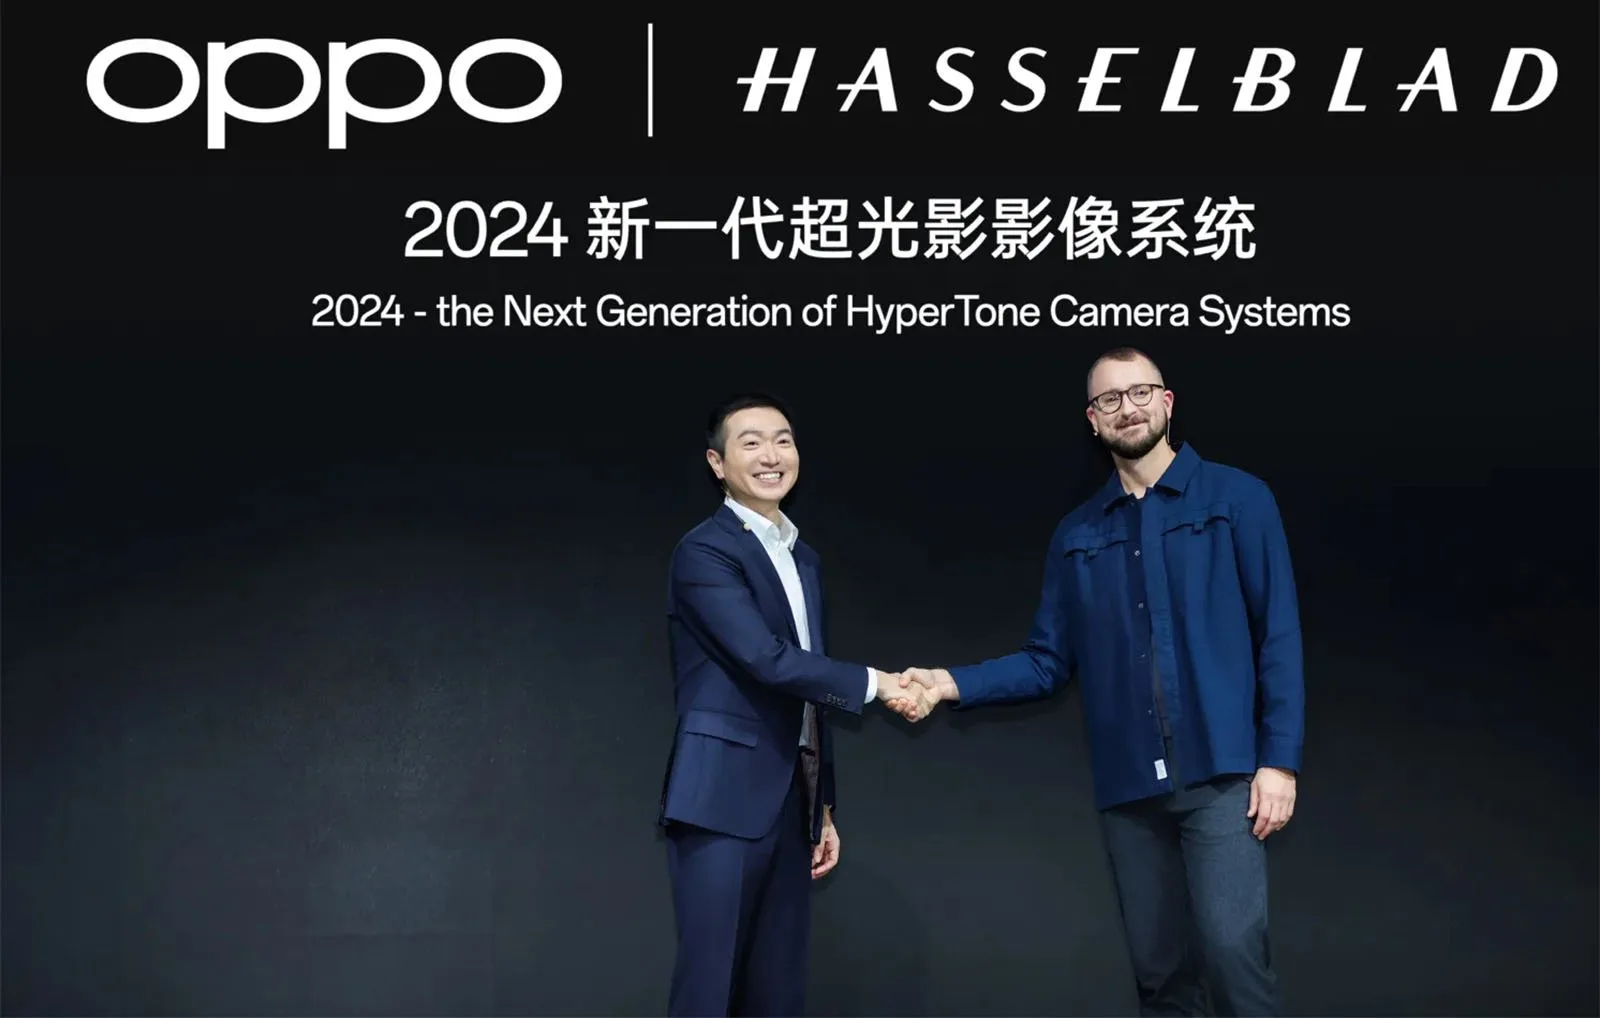 OPPO và Hasselblad cùng hợp tác phát triển hệ thống camera 'HyperTone' mới